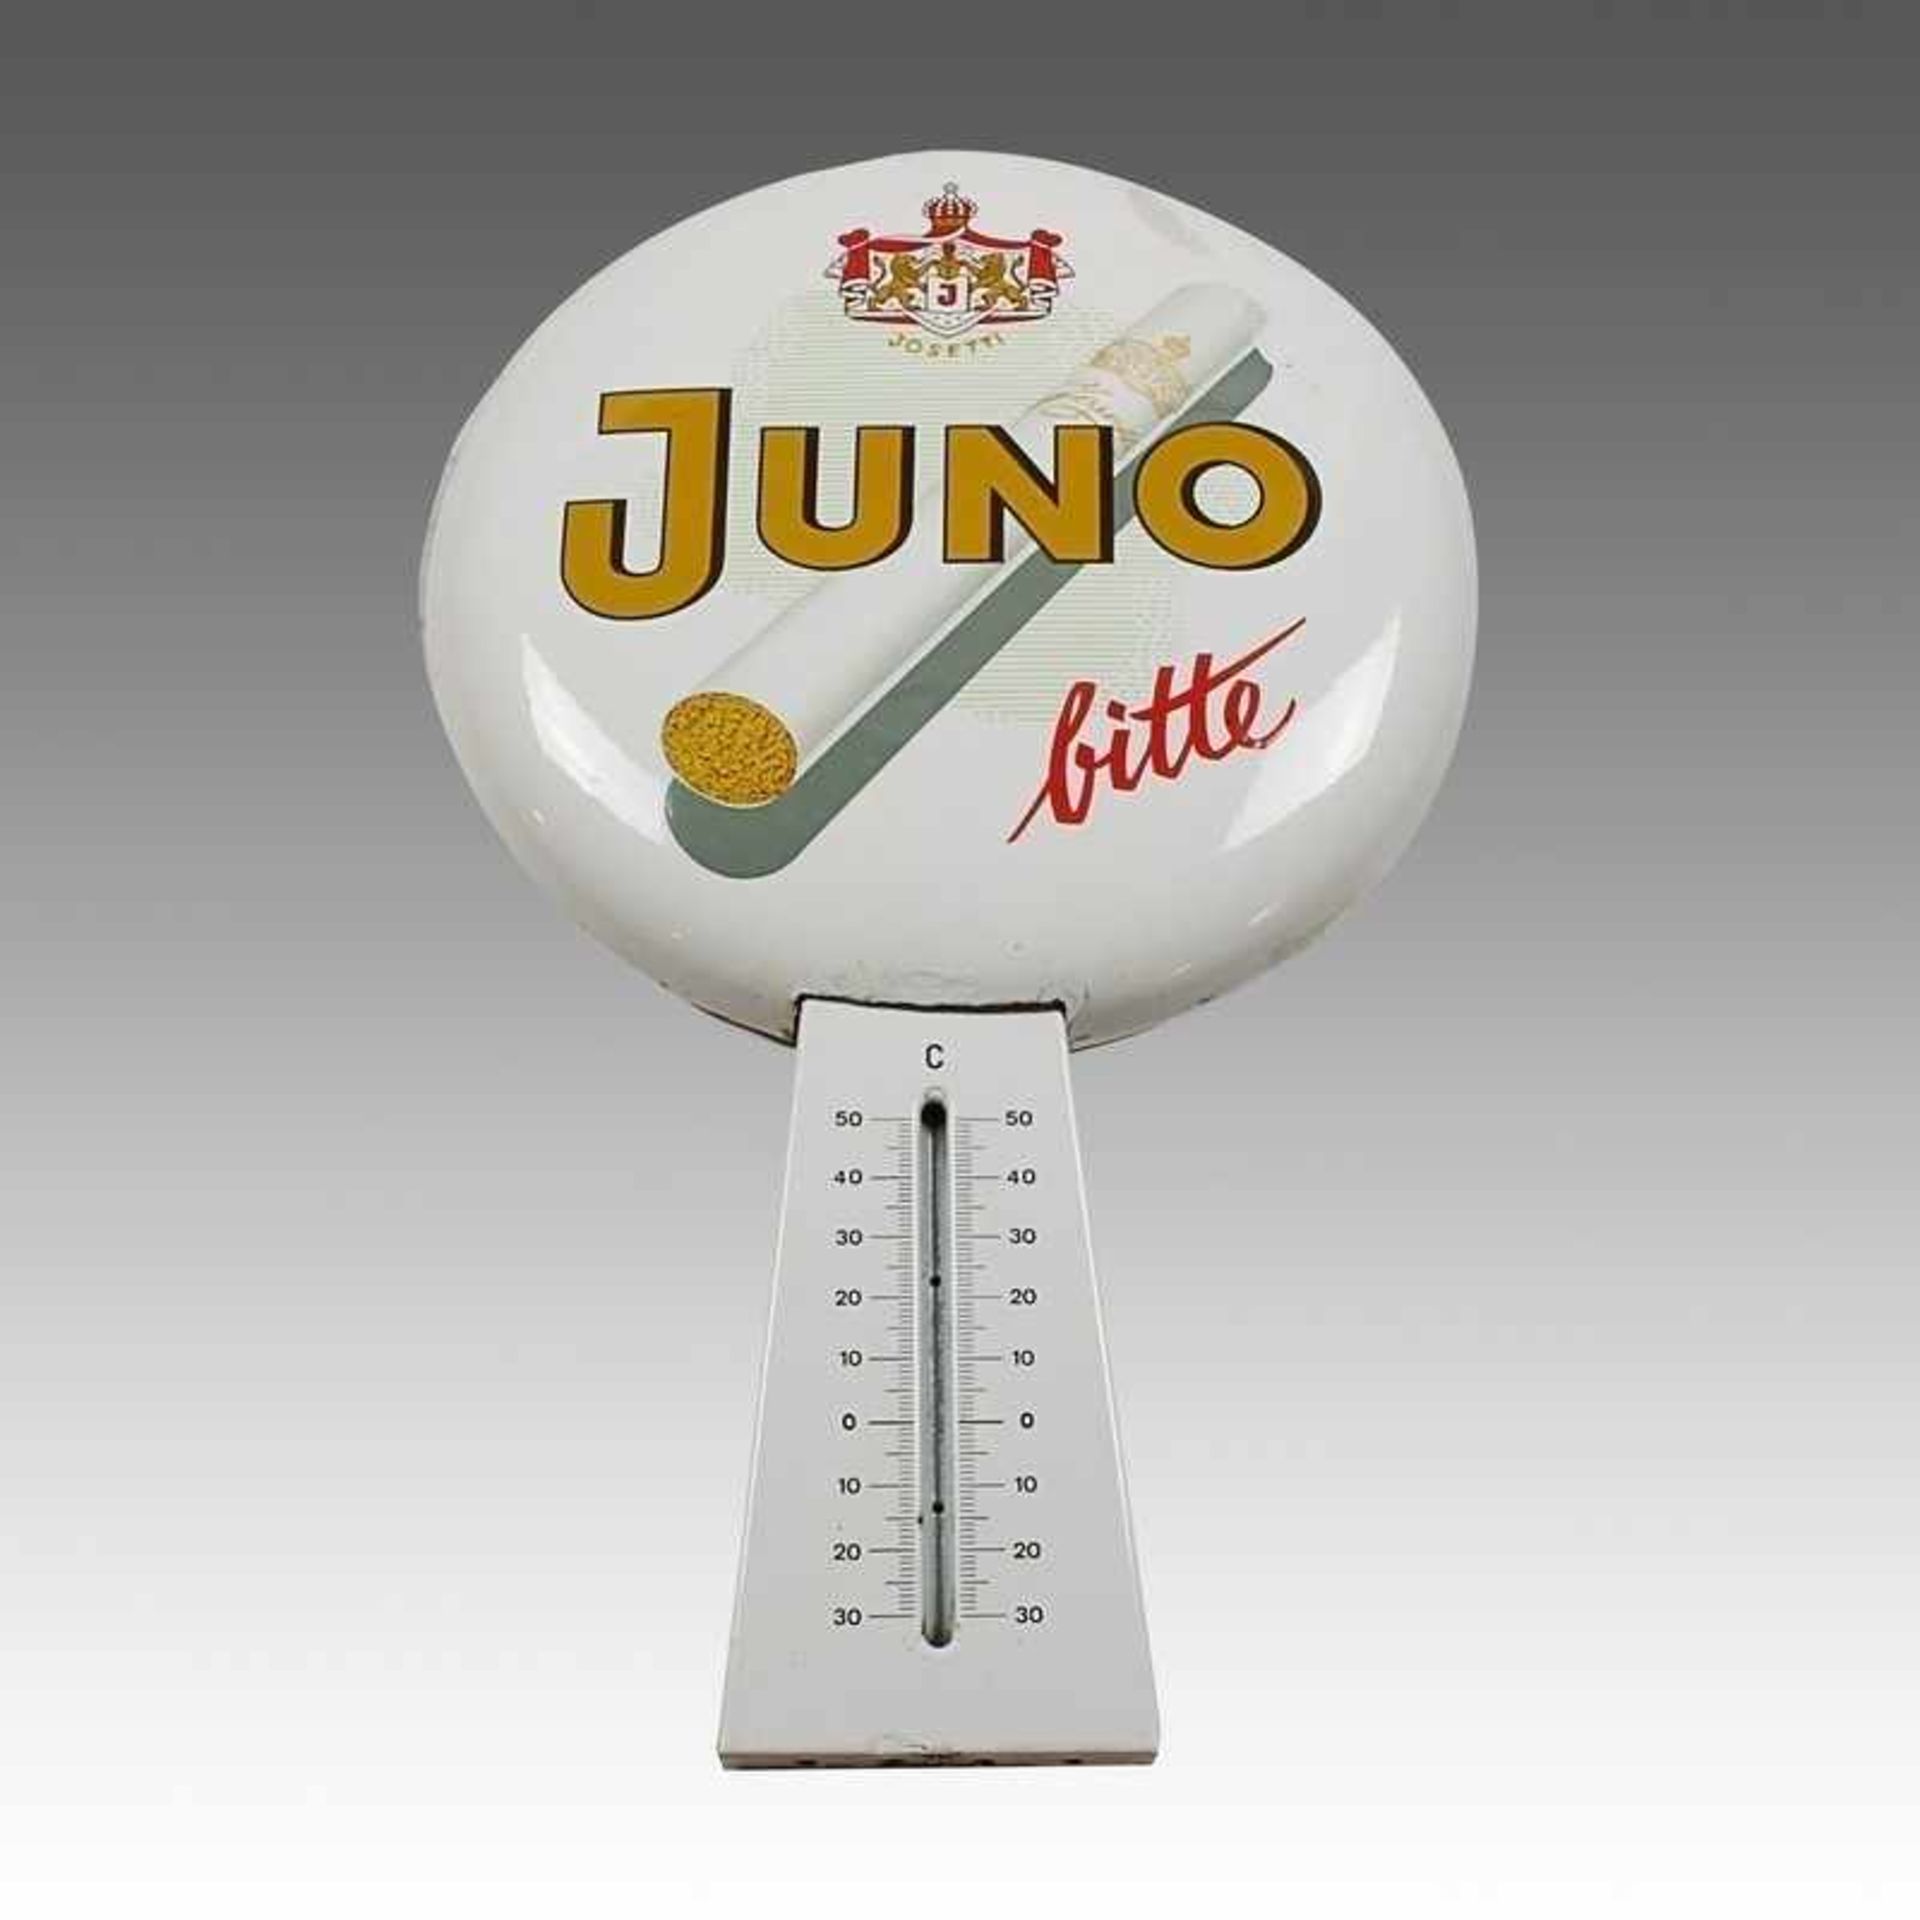 Werbeschild Emaille, weißer Fond, "Juno" Zigarettenwerbung, Thermometer fehlt, Beschädigungen